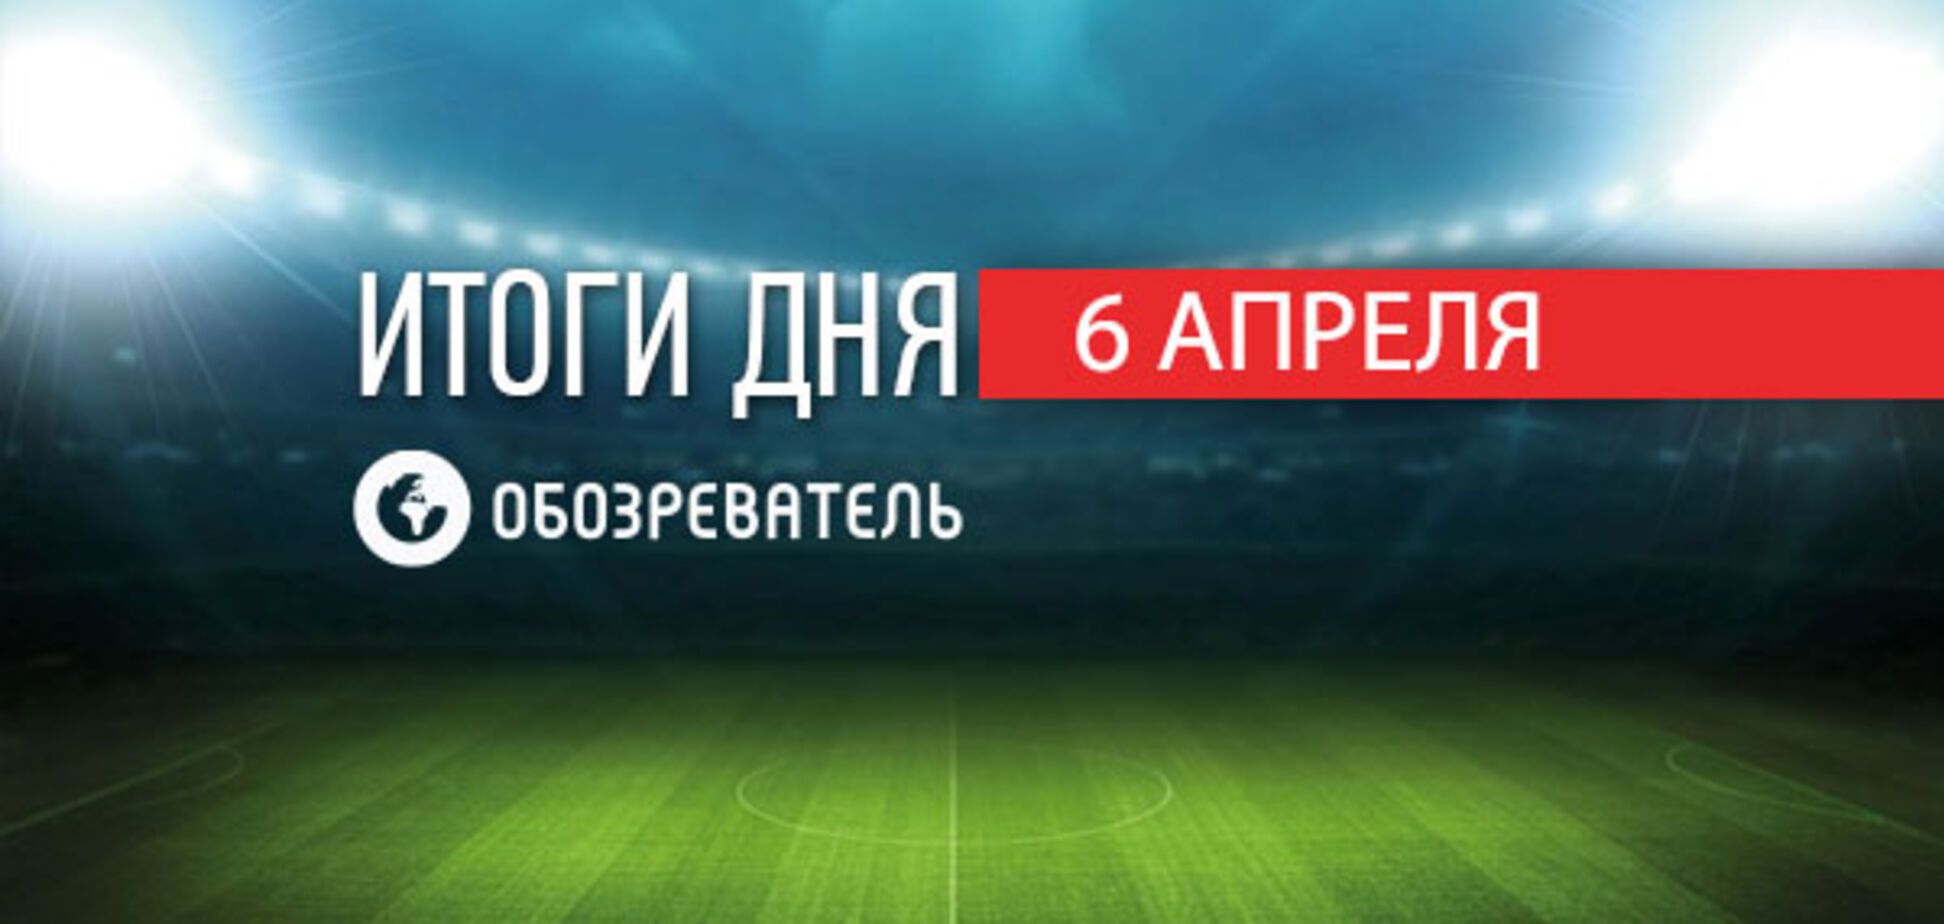 Український футболіст 'Шахтаря' змінює громадянство: спортивні підсумки 6 квітня